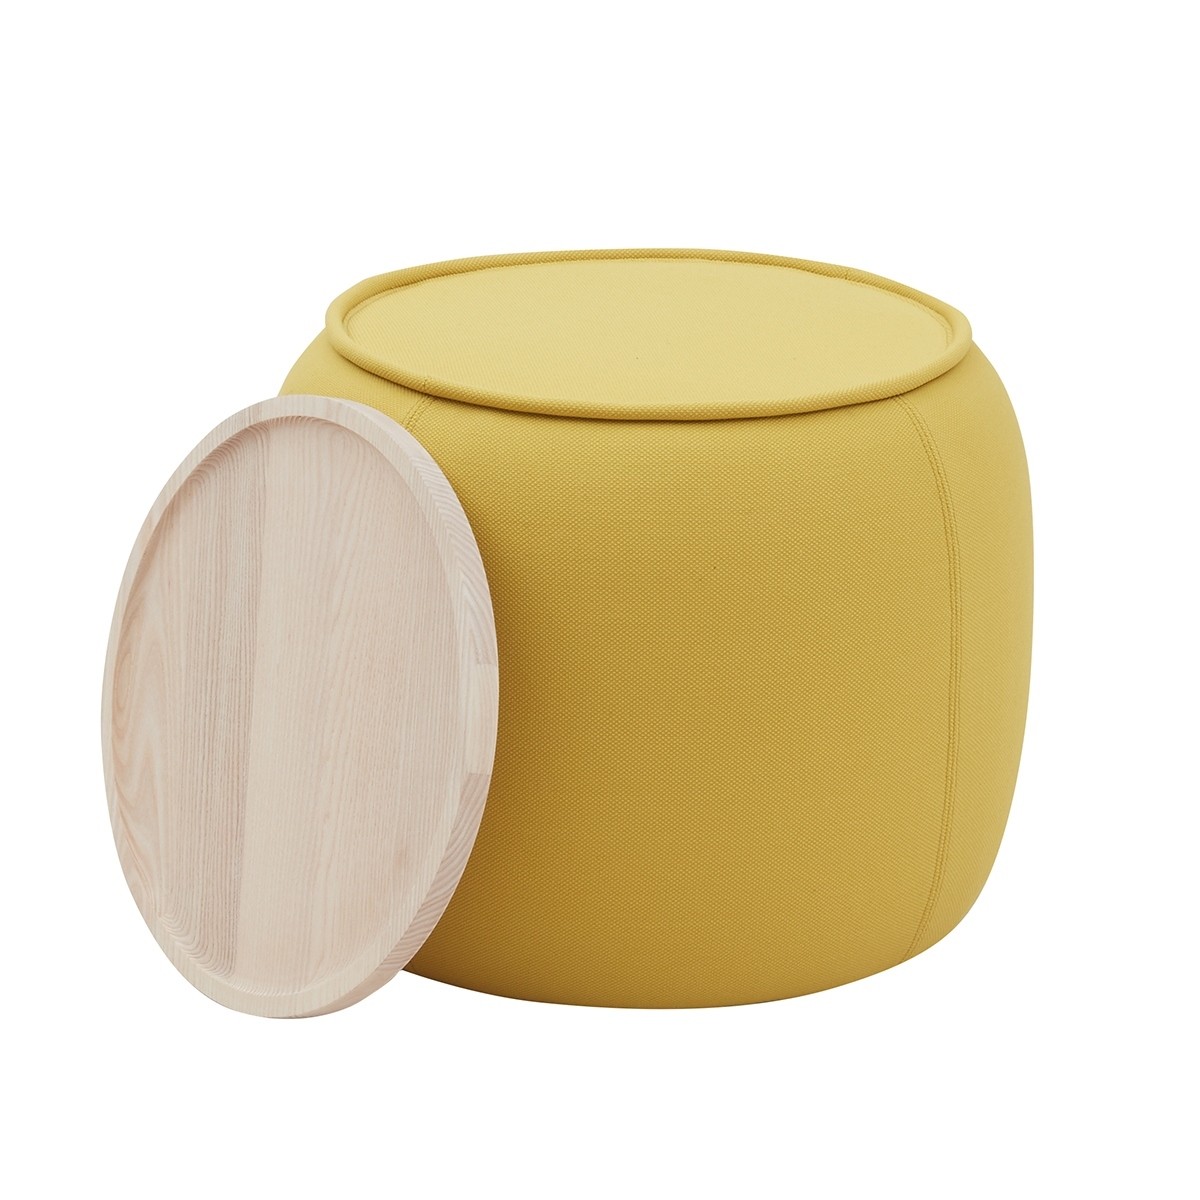 Pouf design jaune avec plateau bois amovible collection CONGA SOFTLINE DK